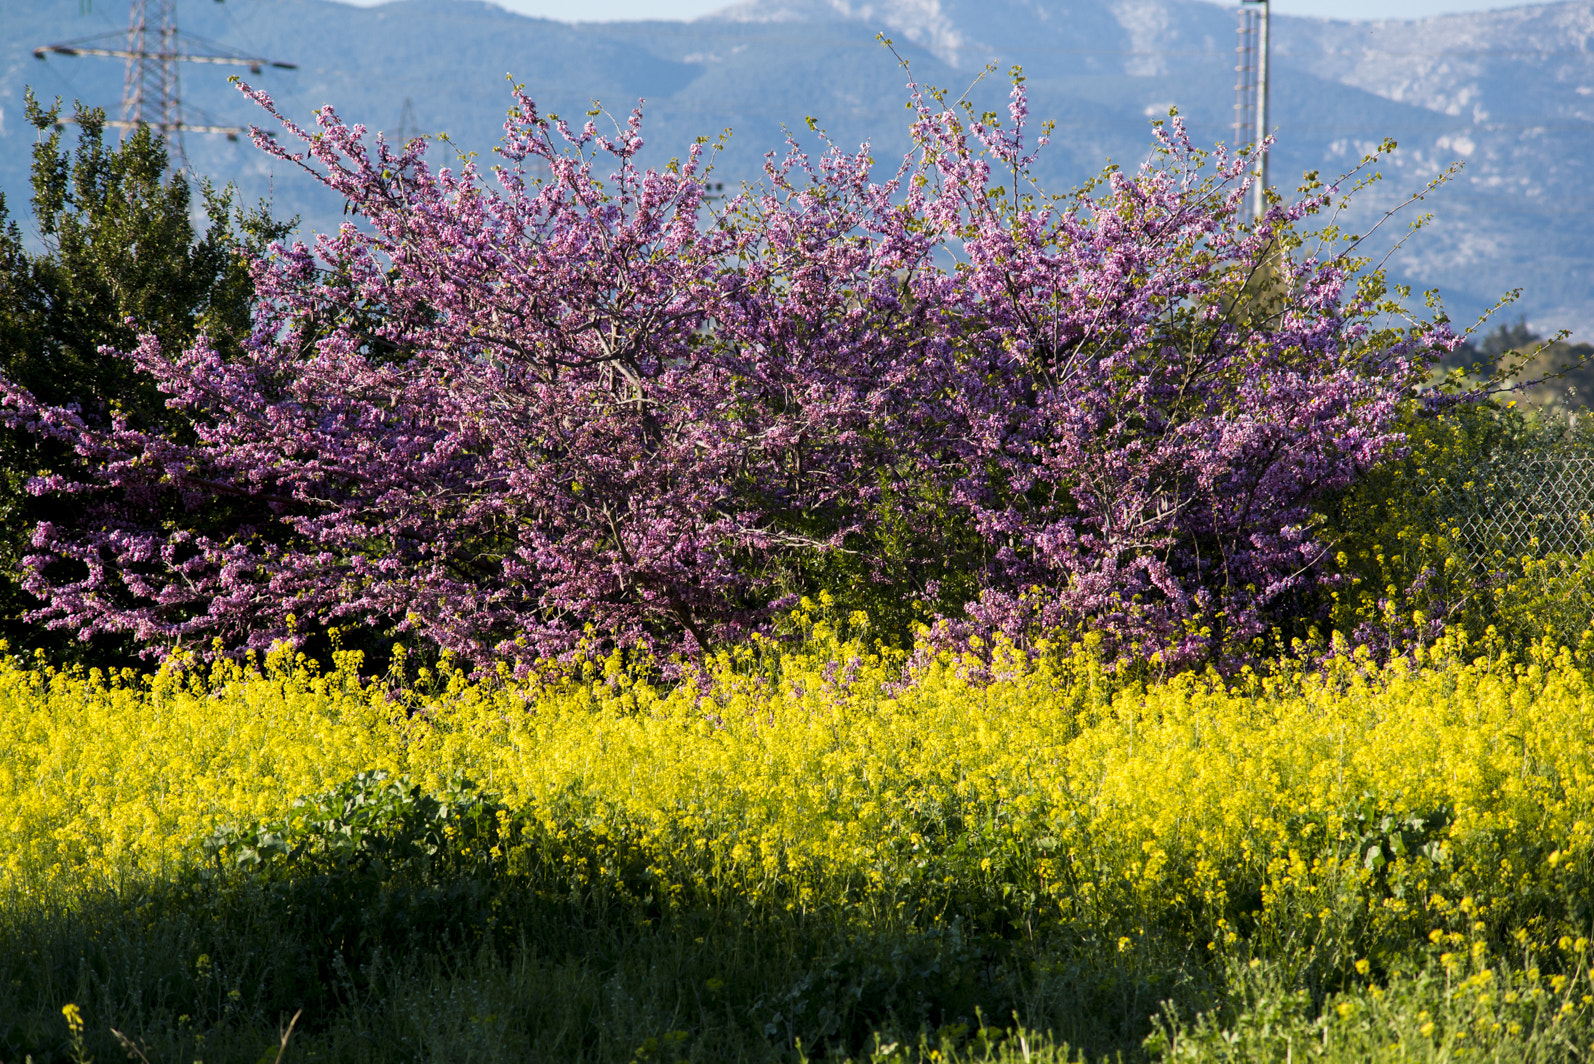 Nikon D800 + AF Zoom-Nikkor 70-210mm f/4 sample photo. The wonderful colors of spring photography